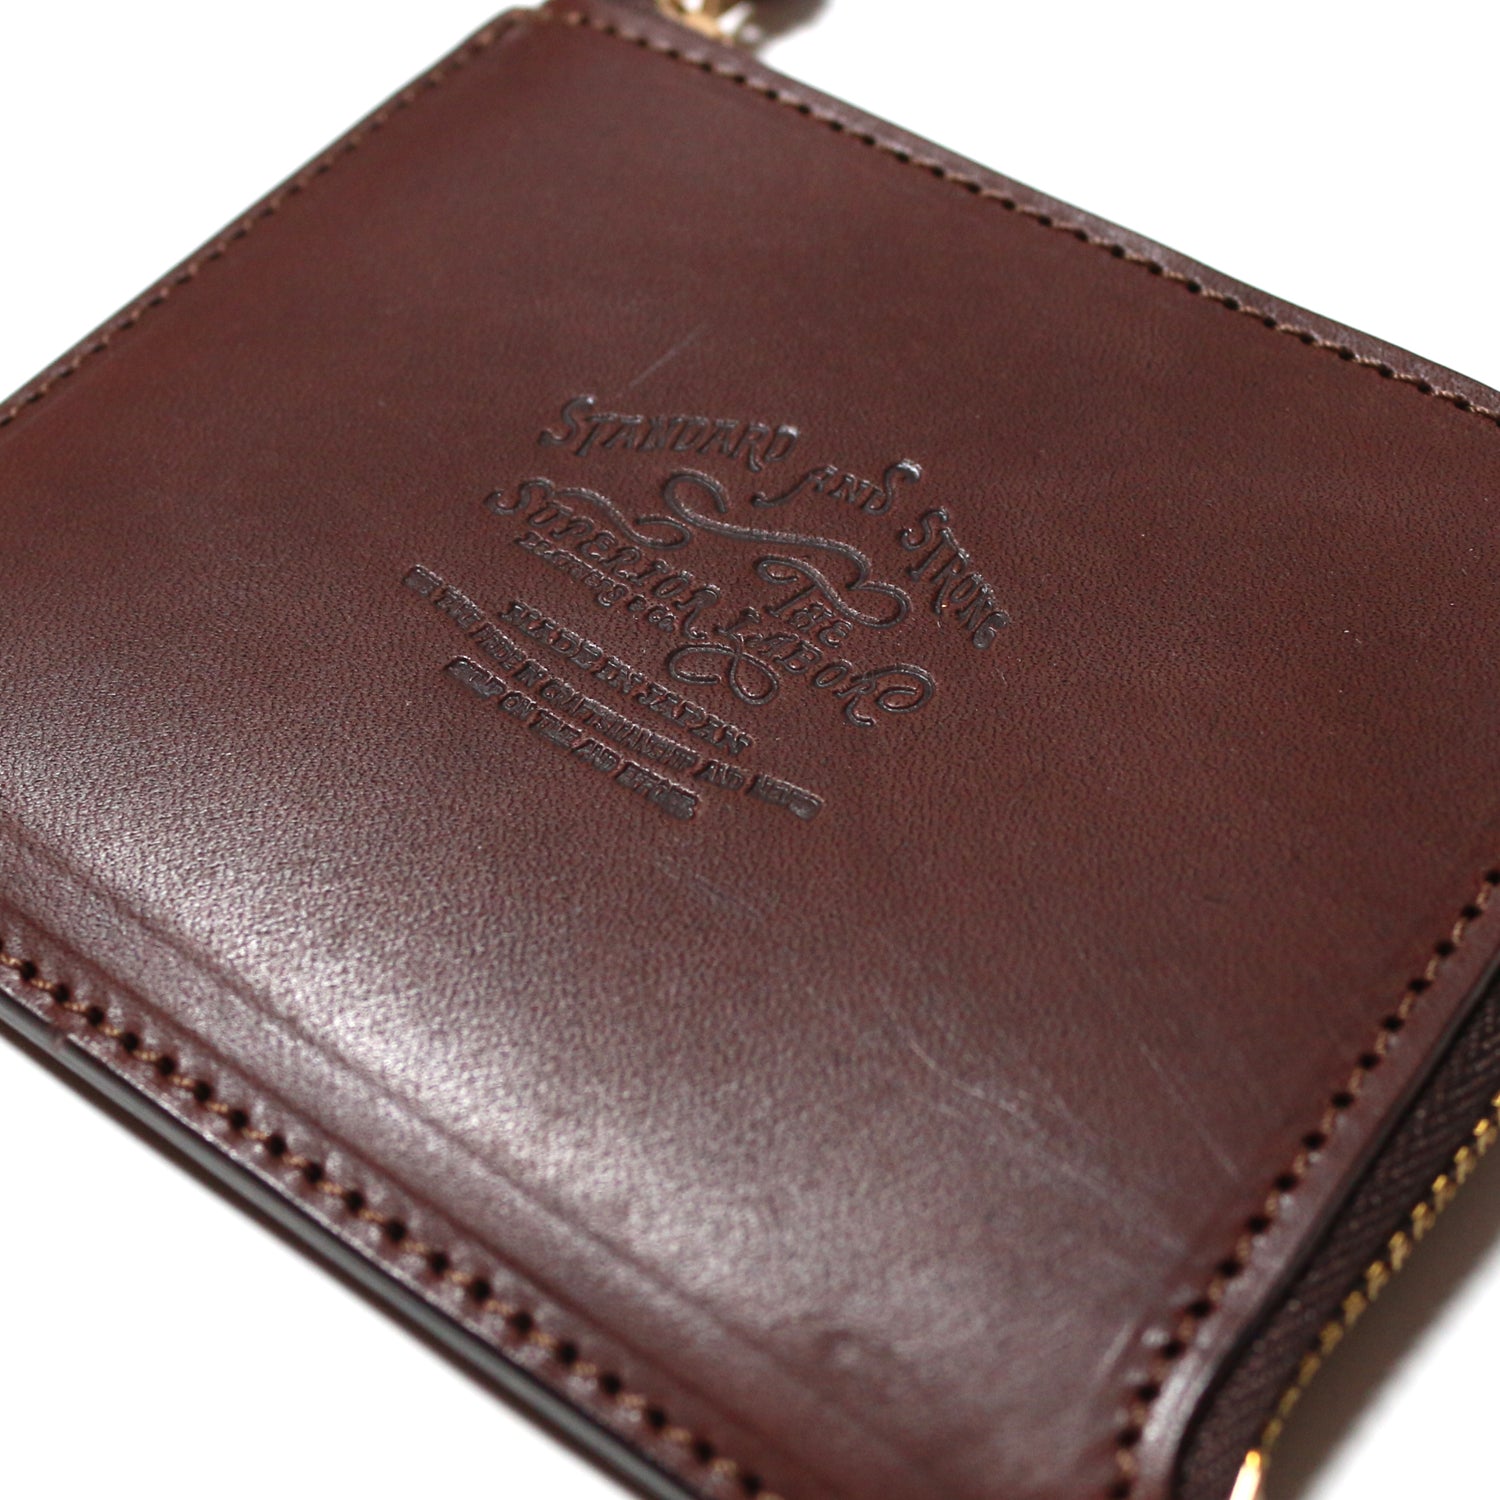 SL0227 zip half wallet